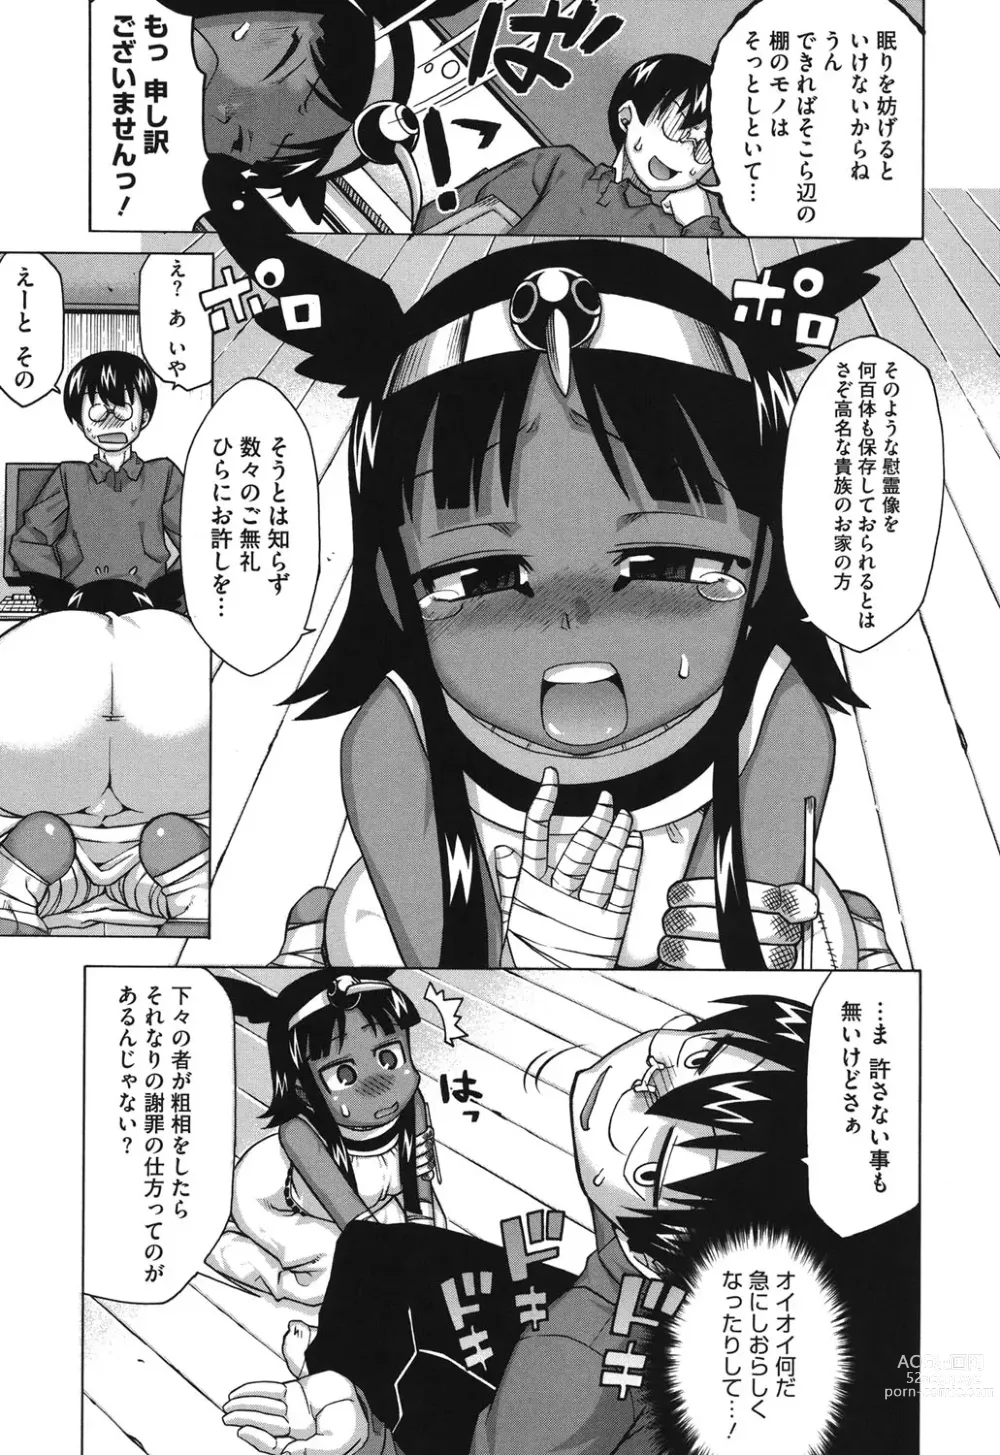 Page 8 of manga Sore wa Rekishi ni Kakanaide!